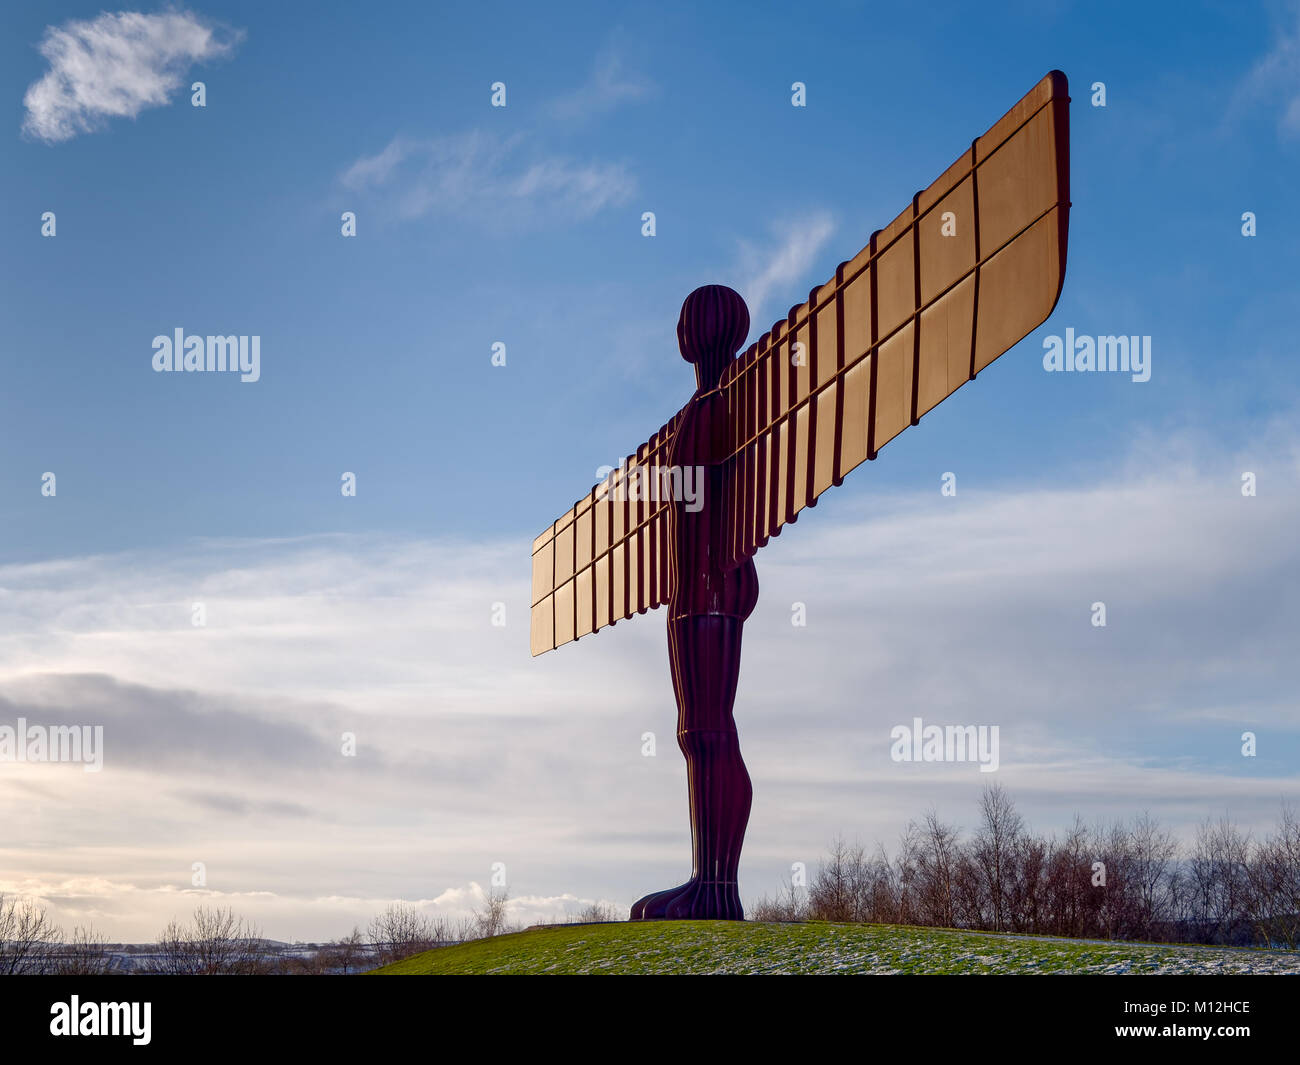 GATESHEAD, Tyne und Wear/UK - Januar 19: Blick auf den Engel des Nordens Skulptur in Gateshead, Tyne und am 19. Januar 2018 Verschleiß Stockfoto